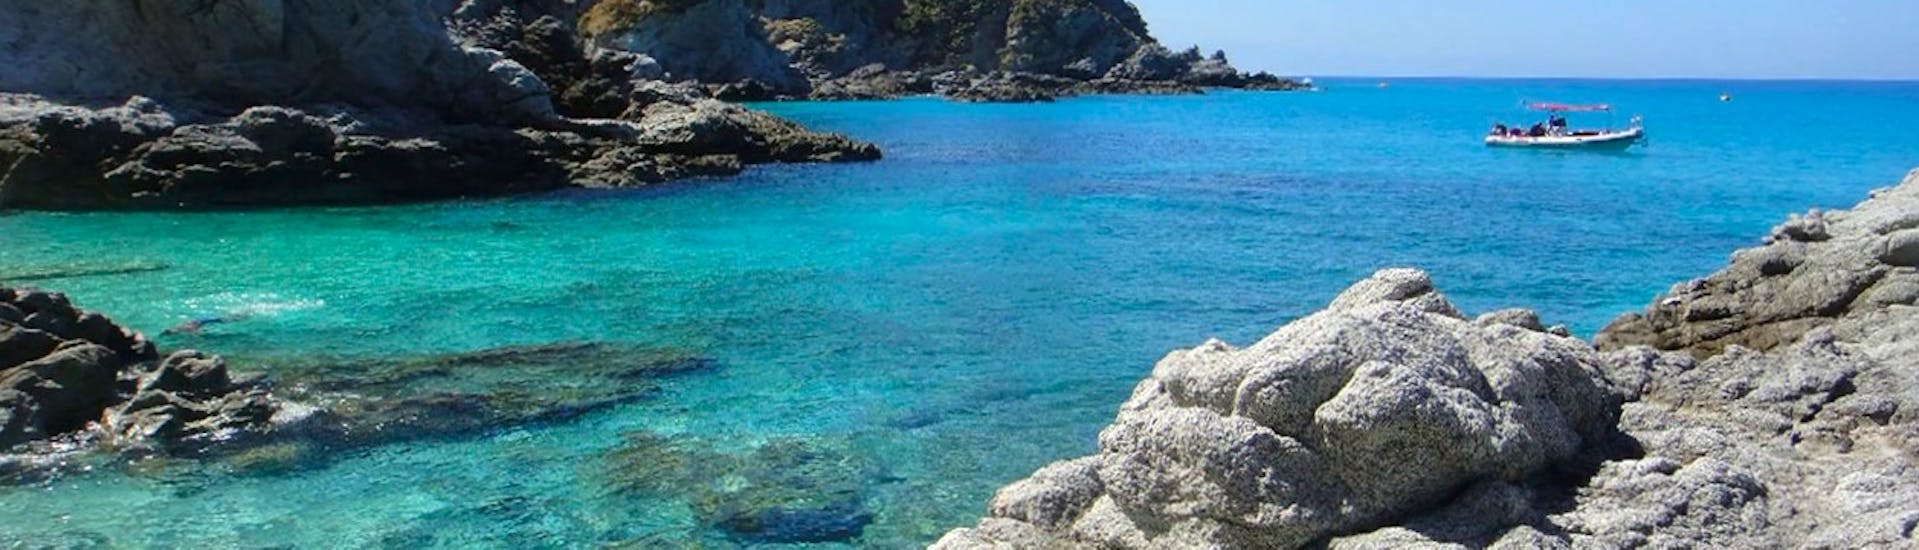 De smaragdgroene wateren van Calabrië die je kunt bewonderen tijdens de RIB Boottocht van Tropea langs de Godenkust.